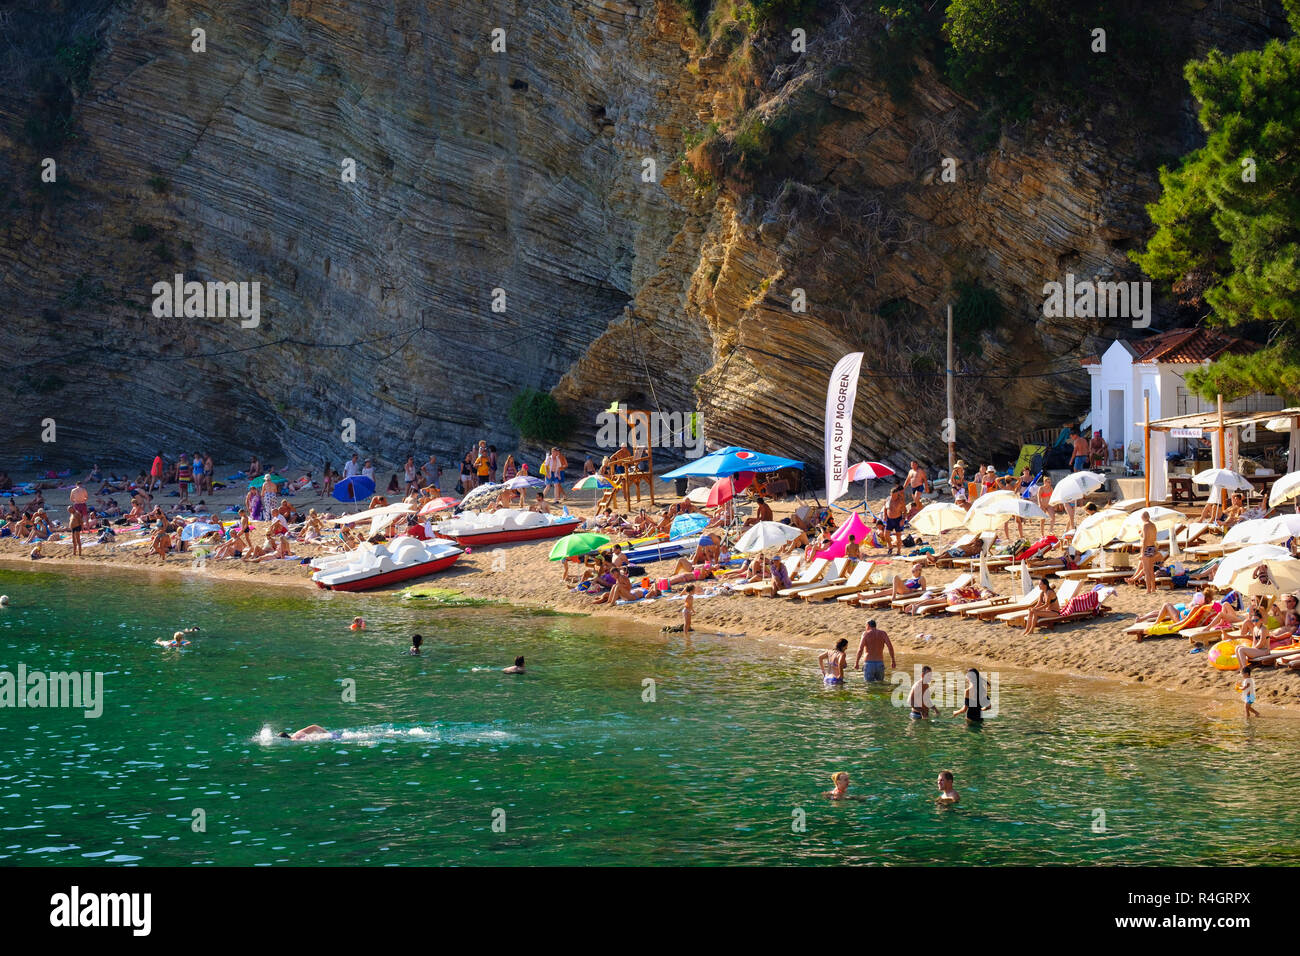 Beach Mogren 1, Budva, Adriatic coast, Montenegro Stock Photo